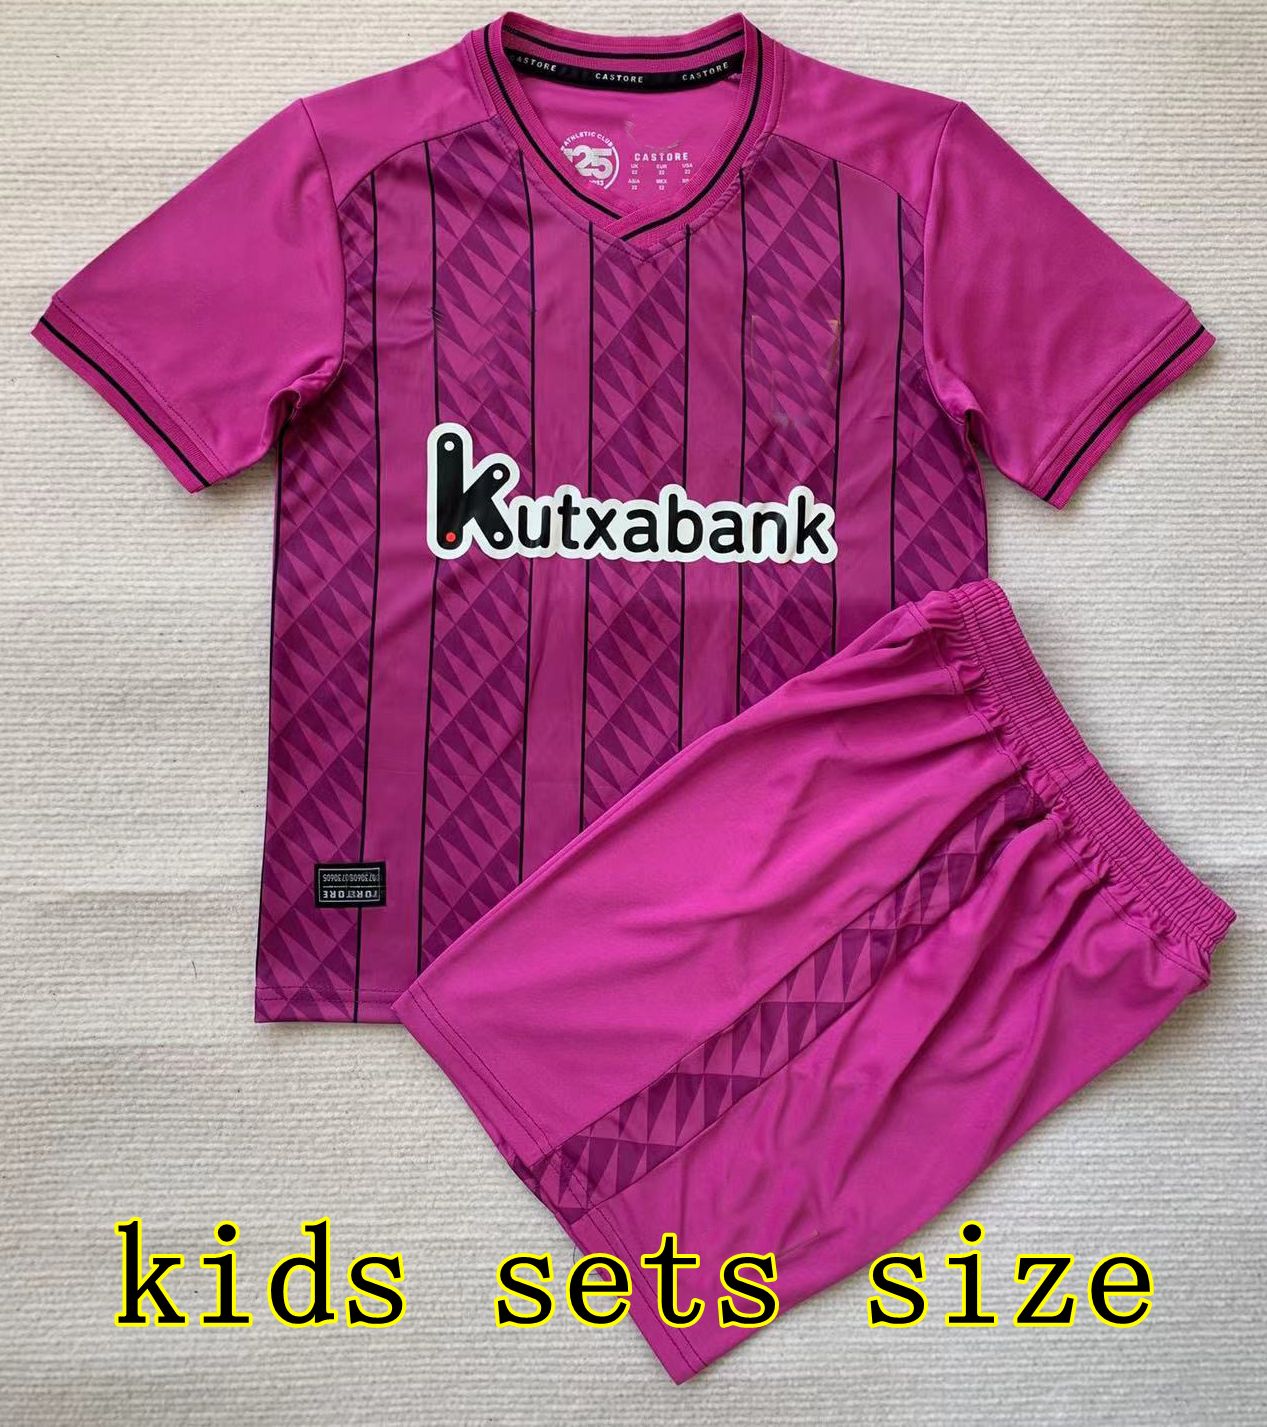 Pink GK kids sets